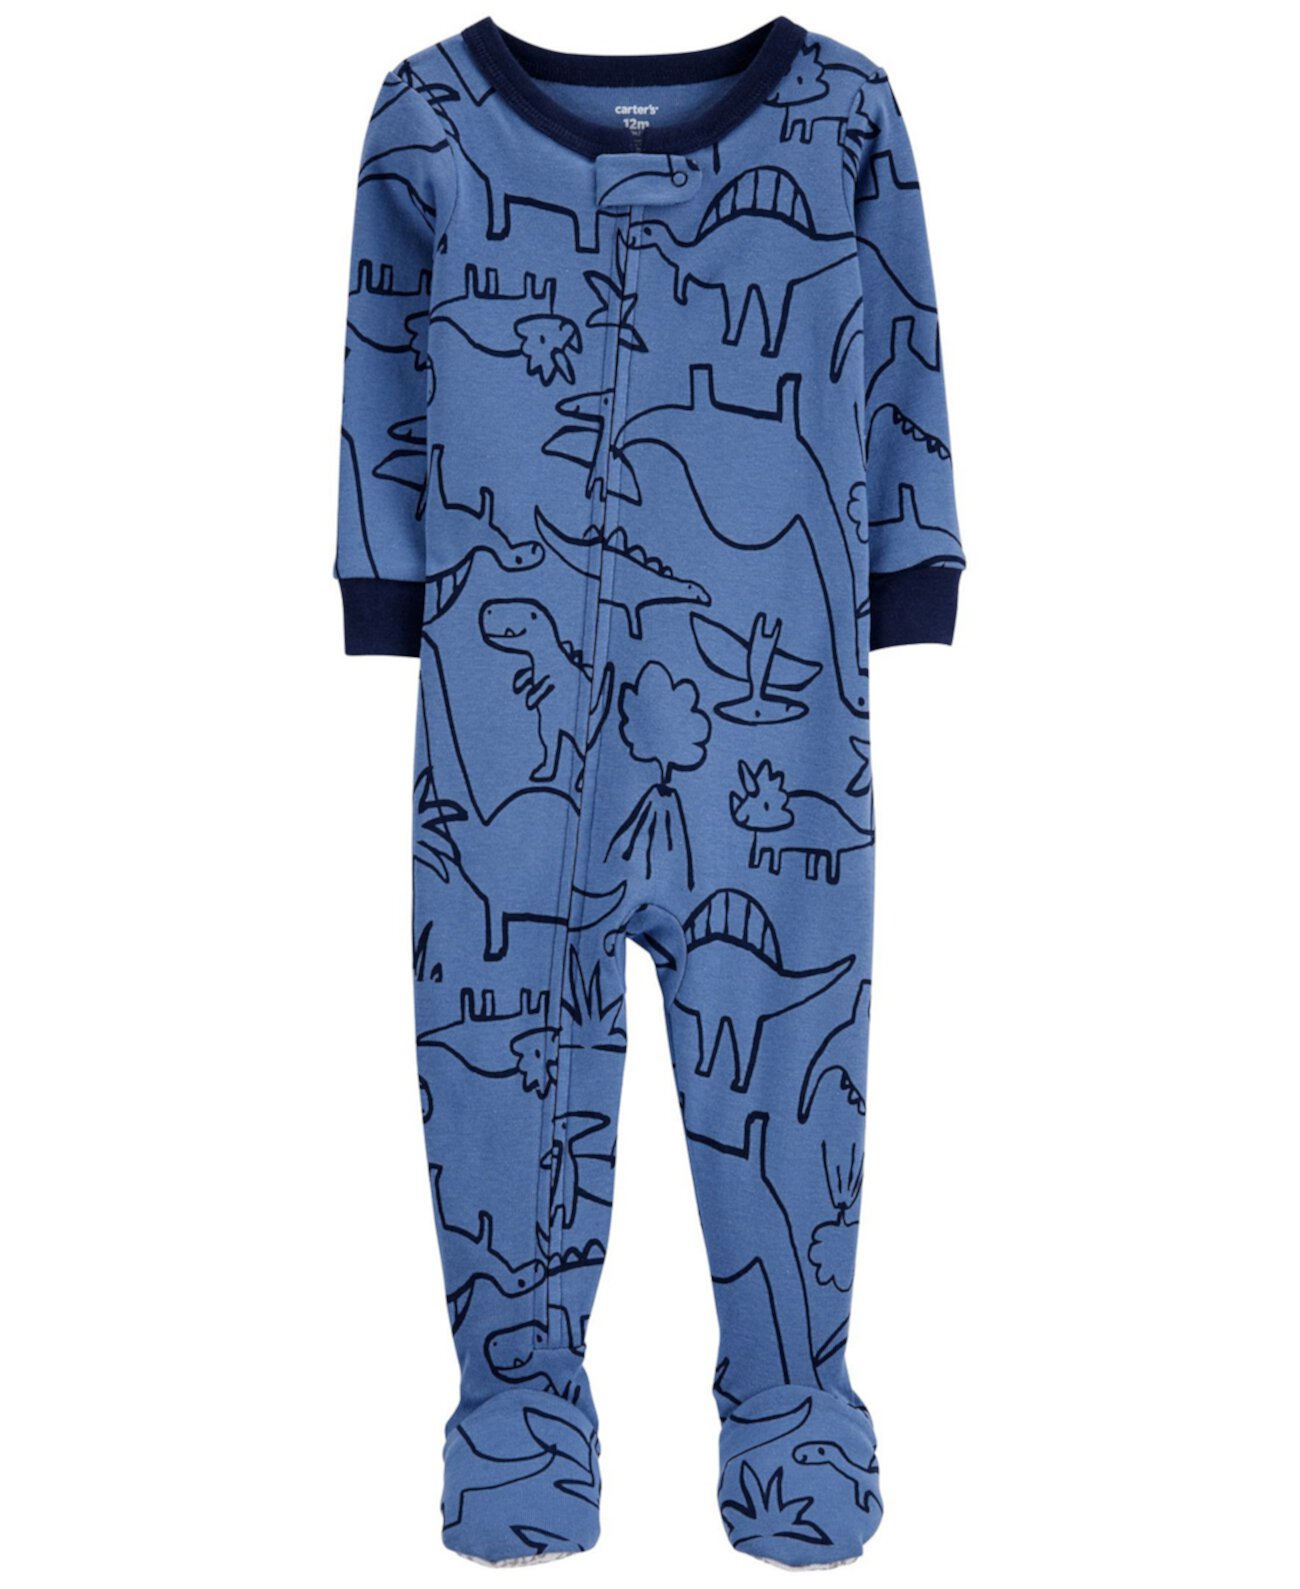 Цельнокроеная пижама из хлопка с принтом динозавра для маленьких мальчиков Carter's